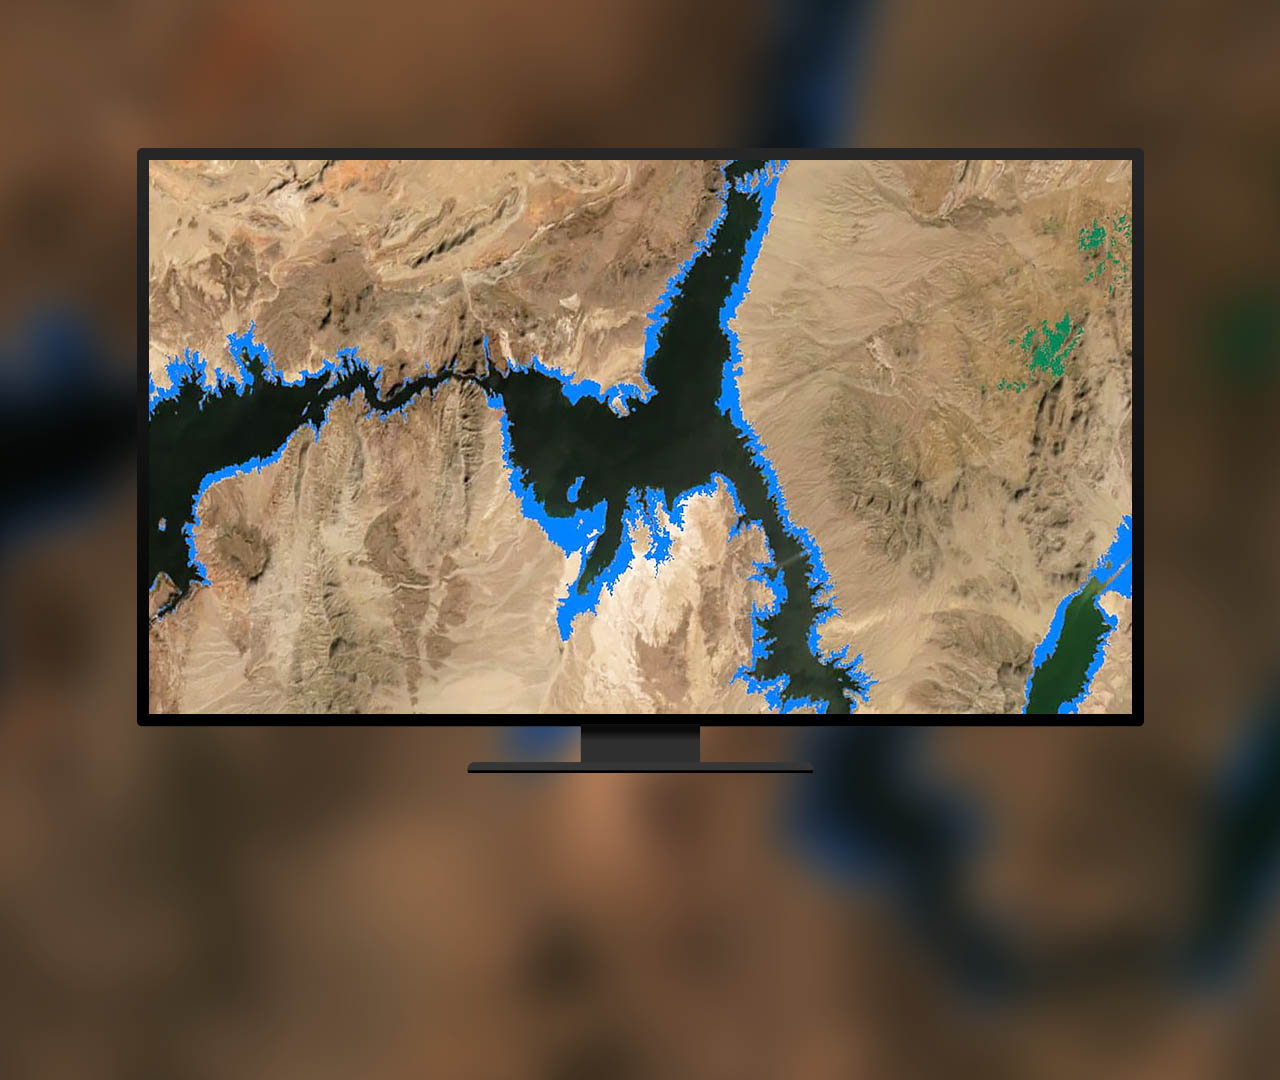 青色でハイライト表示され、河川のサイズの変化を示しているマップ